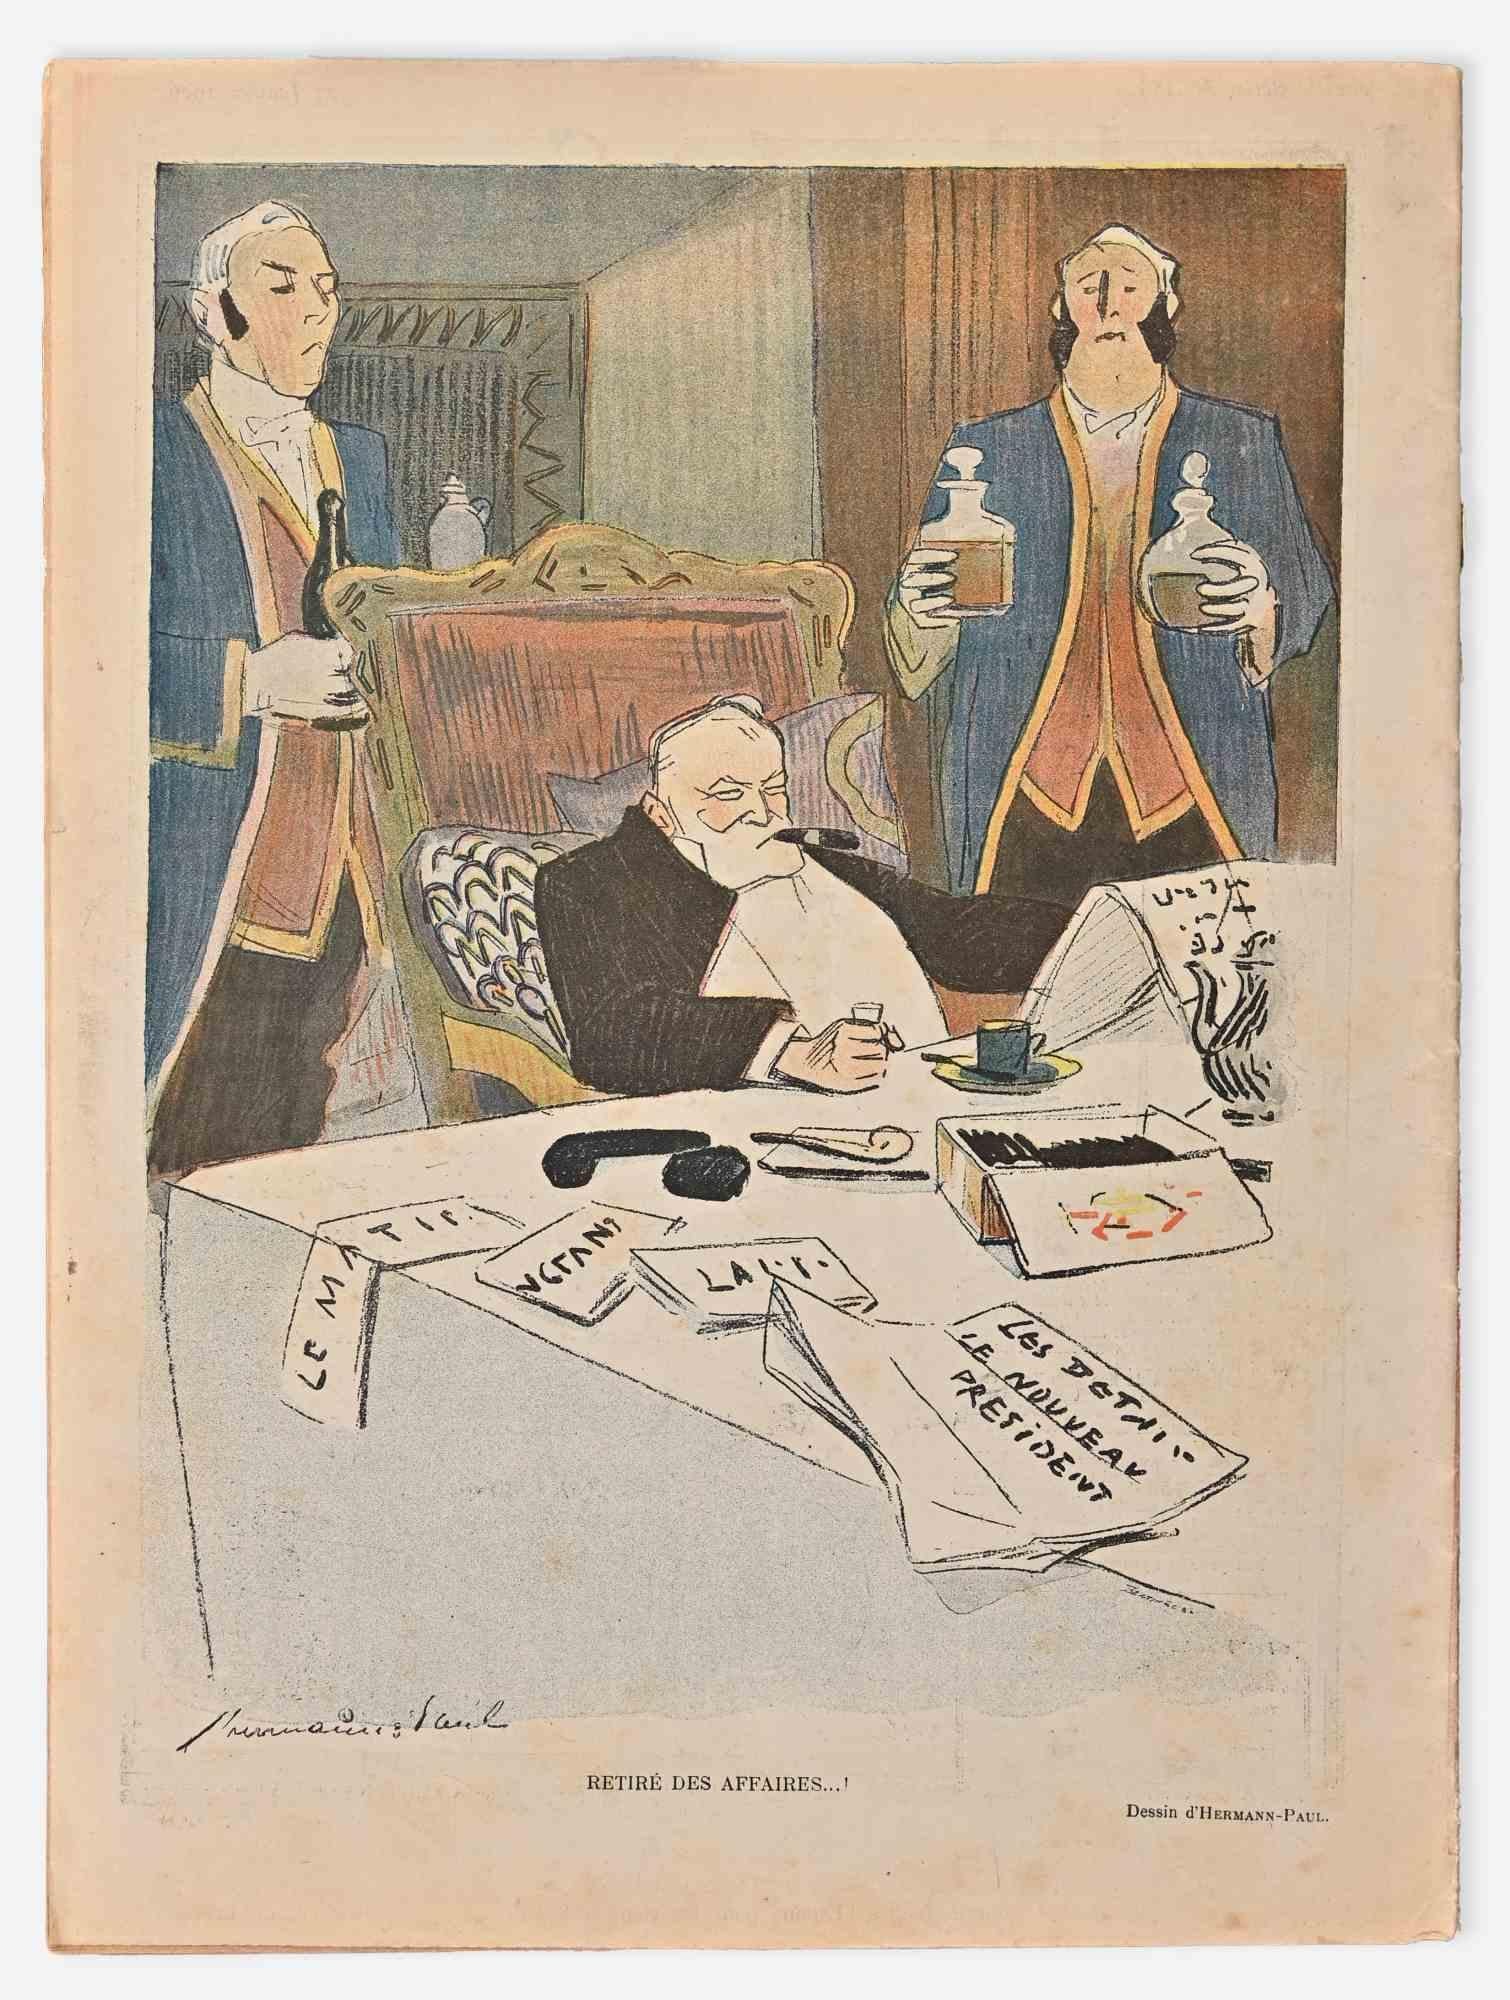 Les Joies du Congrès - Vieille revue de bande dessinée - 1909 - Print de Hermann Paul